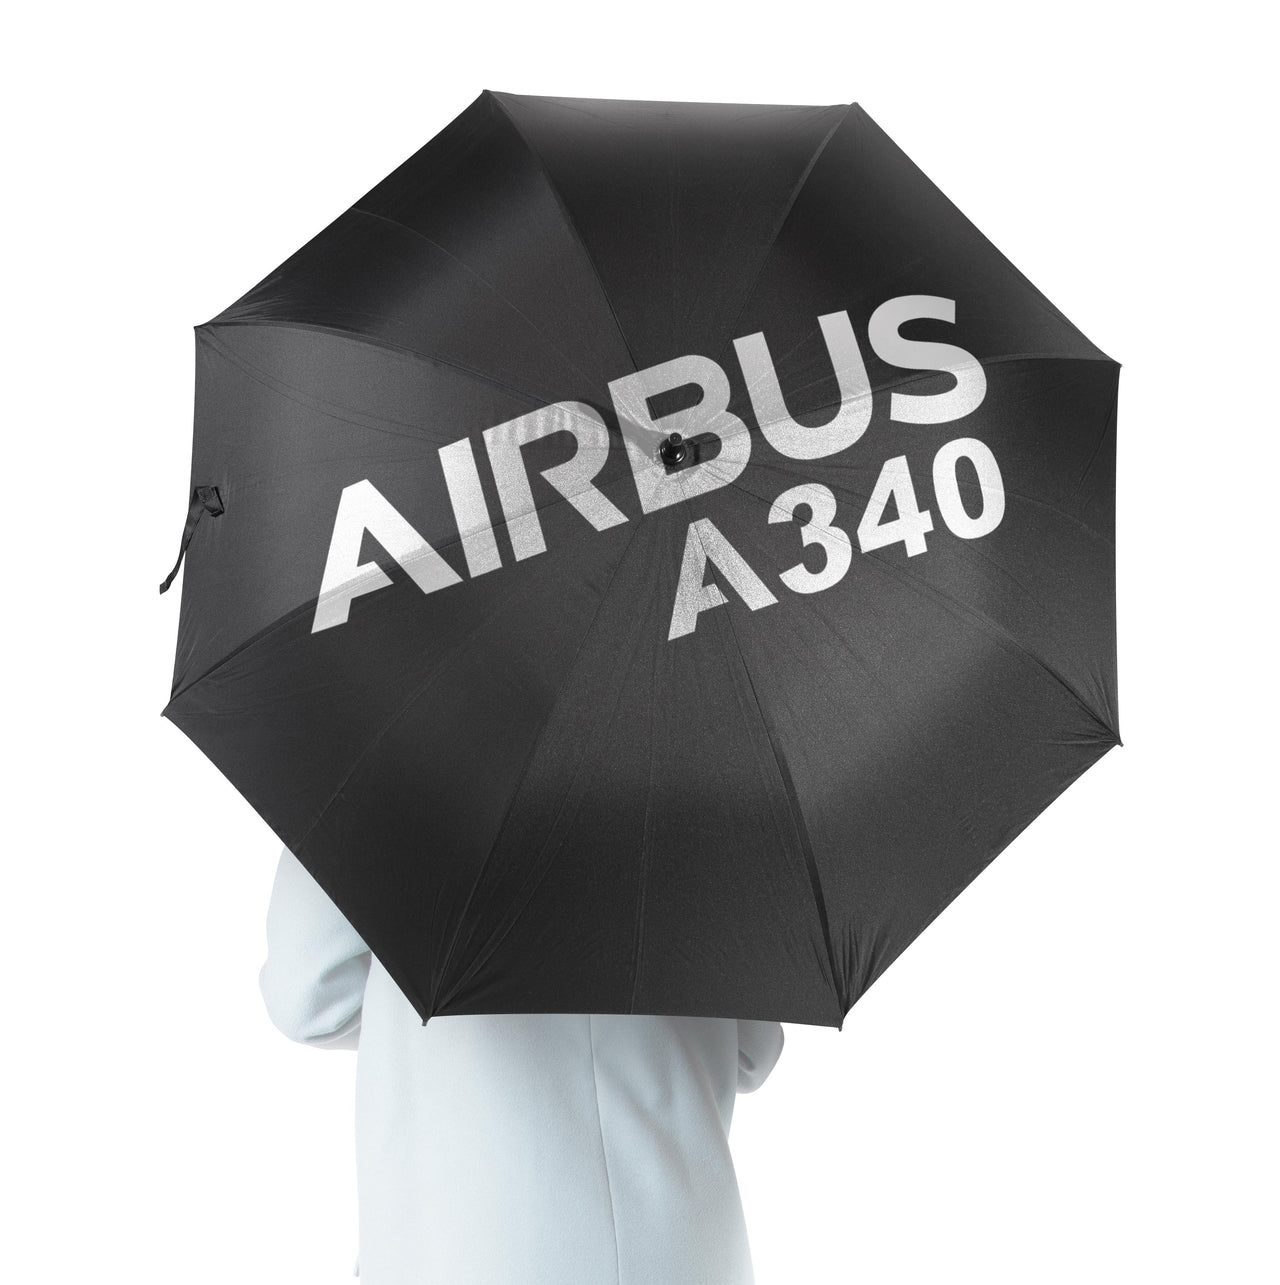 Airbus A340 & Text Designed Umbrella